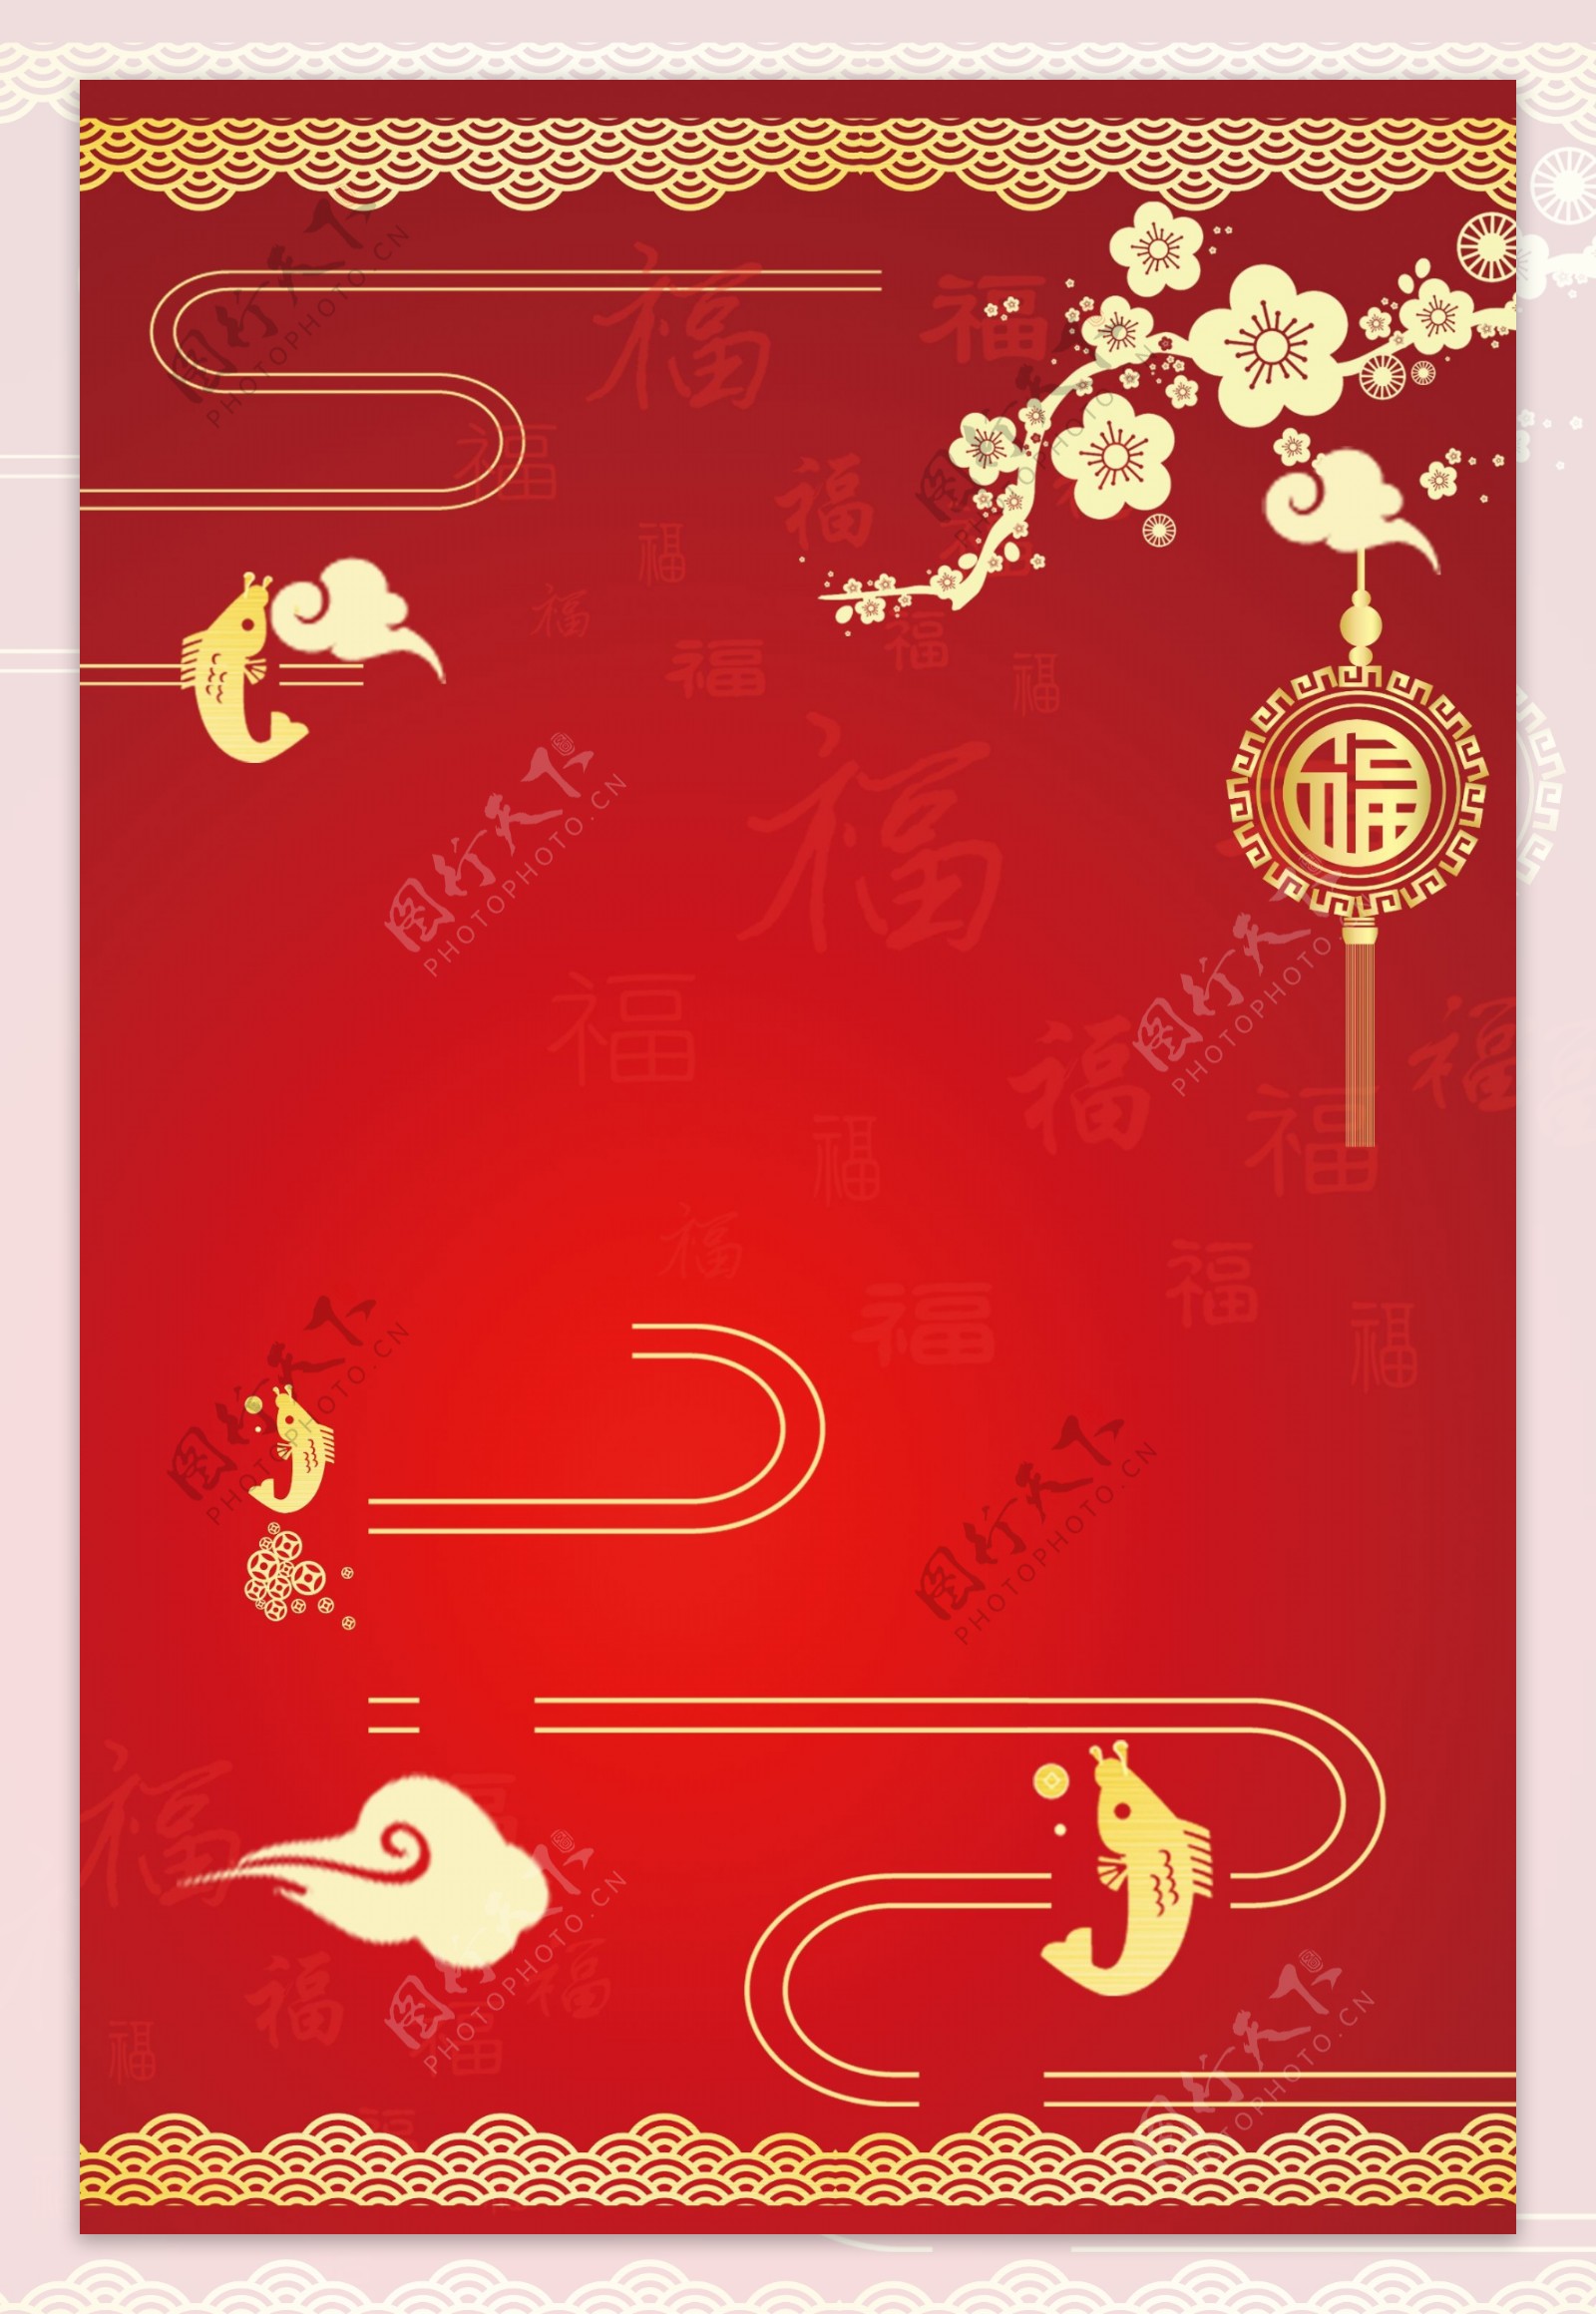 猪年快乐新春元旦红色传统节日广告背景